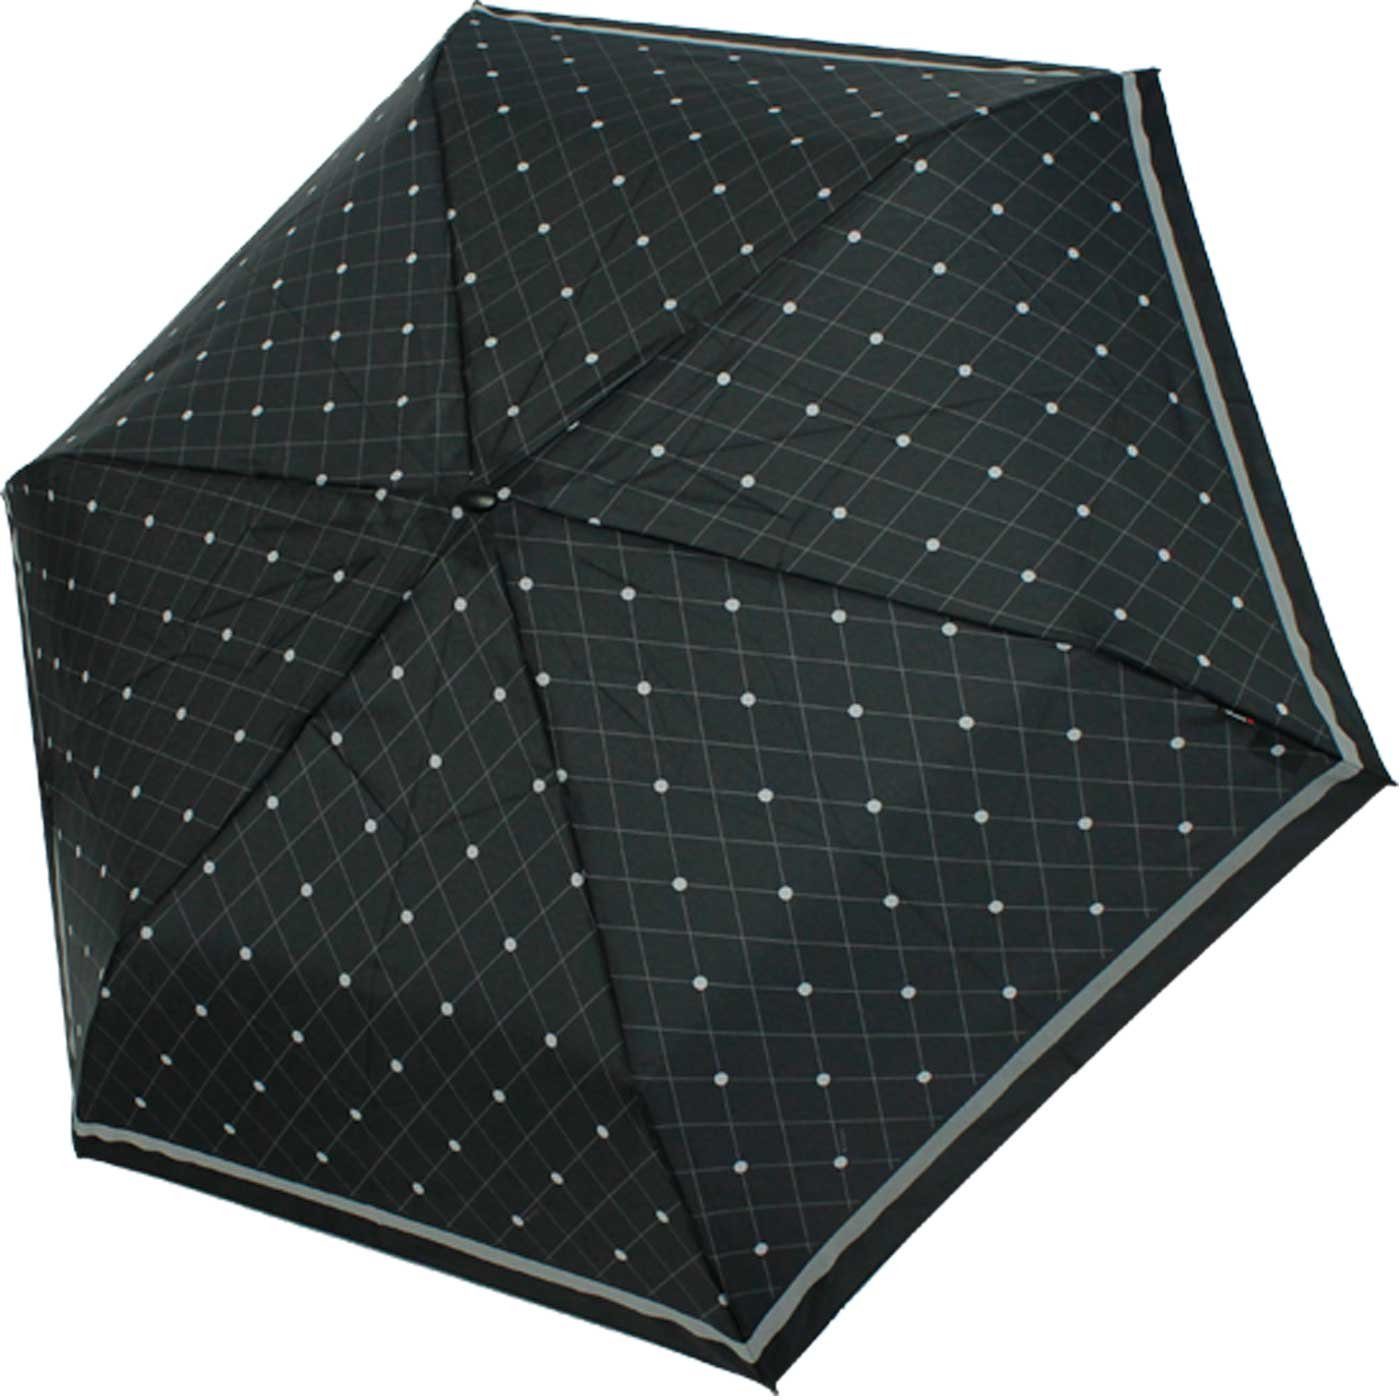 Knirps® Taschenregenschirm flacher, passend ein Notfall jede jeden Schirm, für Tasche, treuer stabiler Begleiter, für